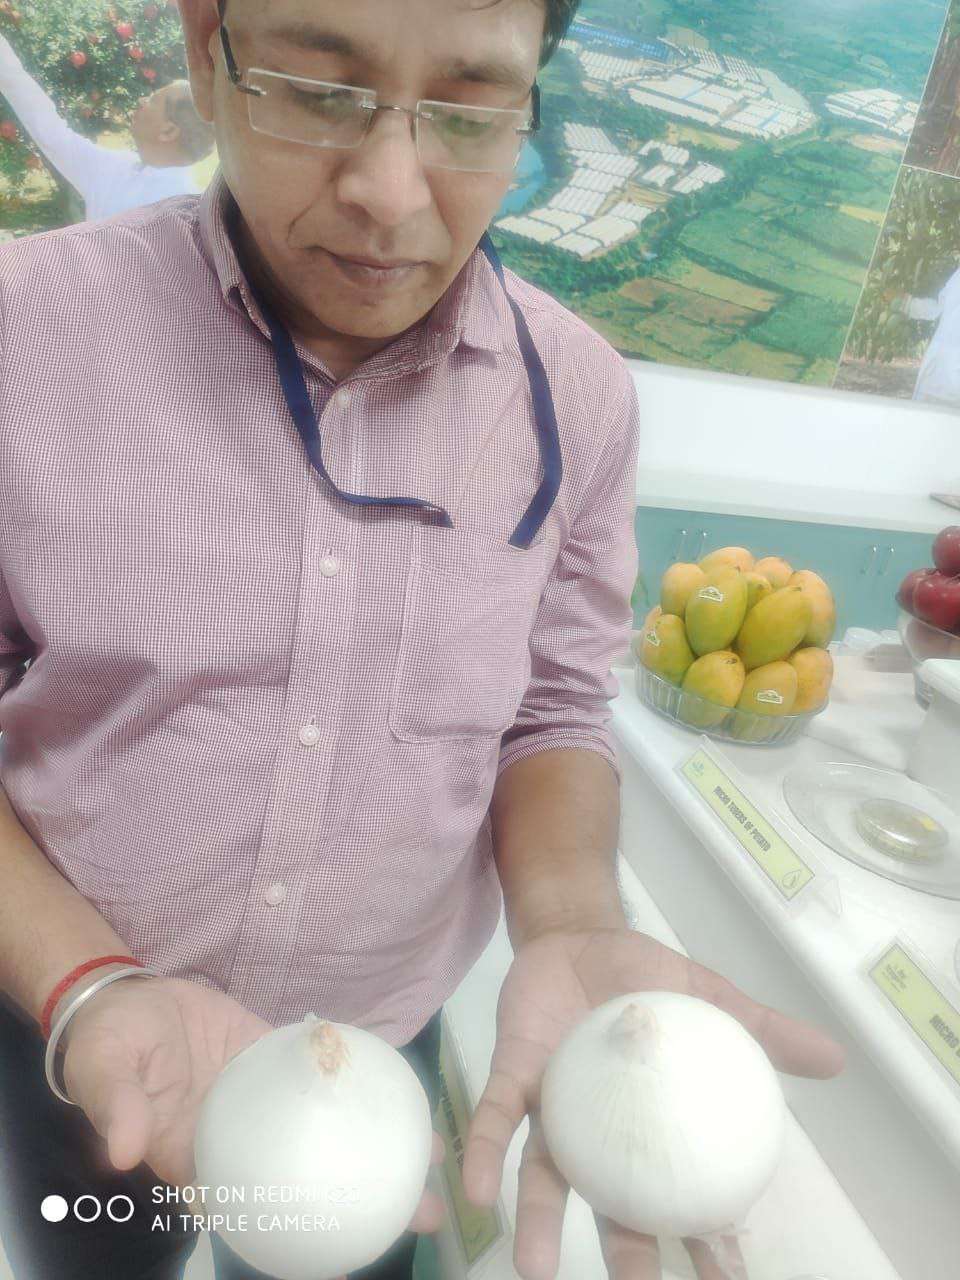 Farmers will prepare onion powder in MP